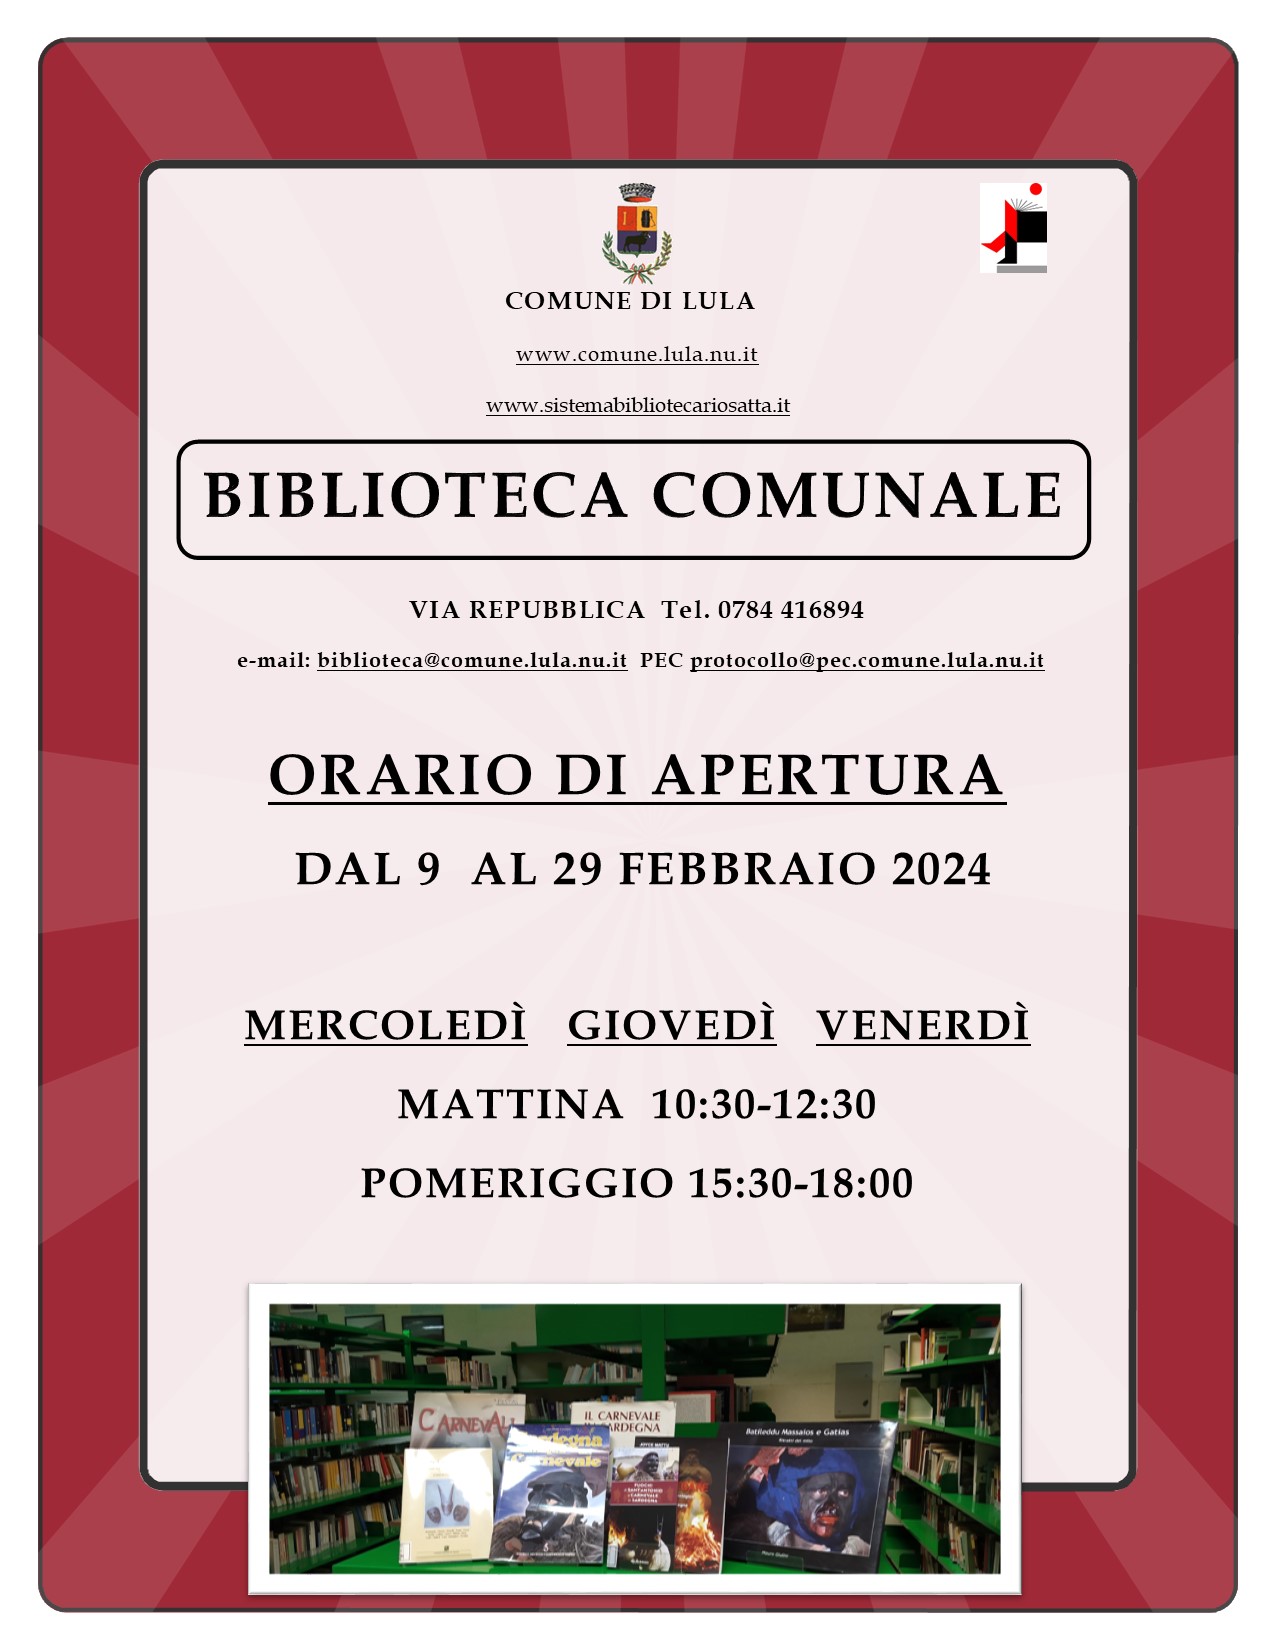 BIBLIOTECA COMUNALE - ORARIO DI APERTURA DAL 9 al 29 FEBBRAIO 2024